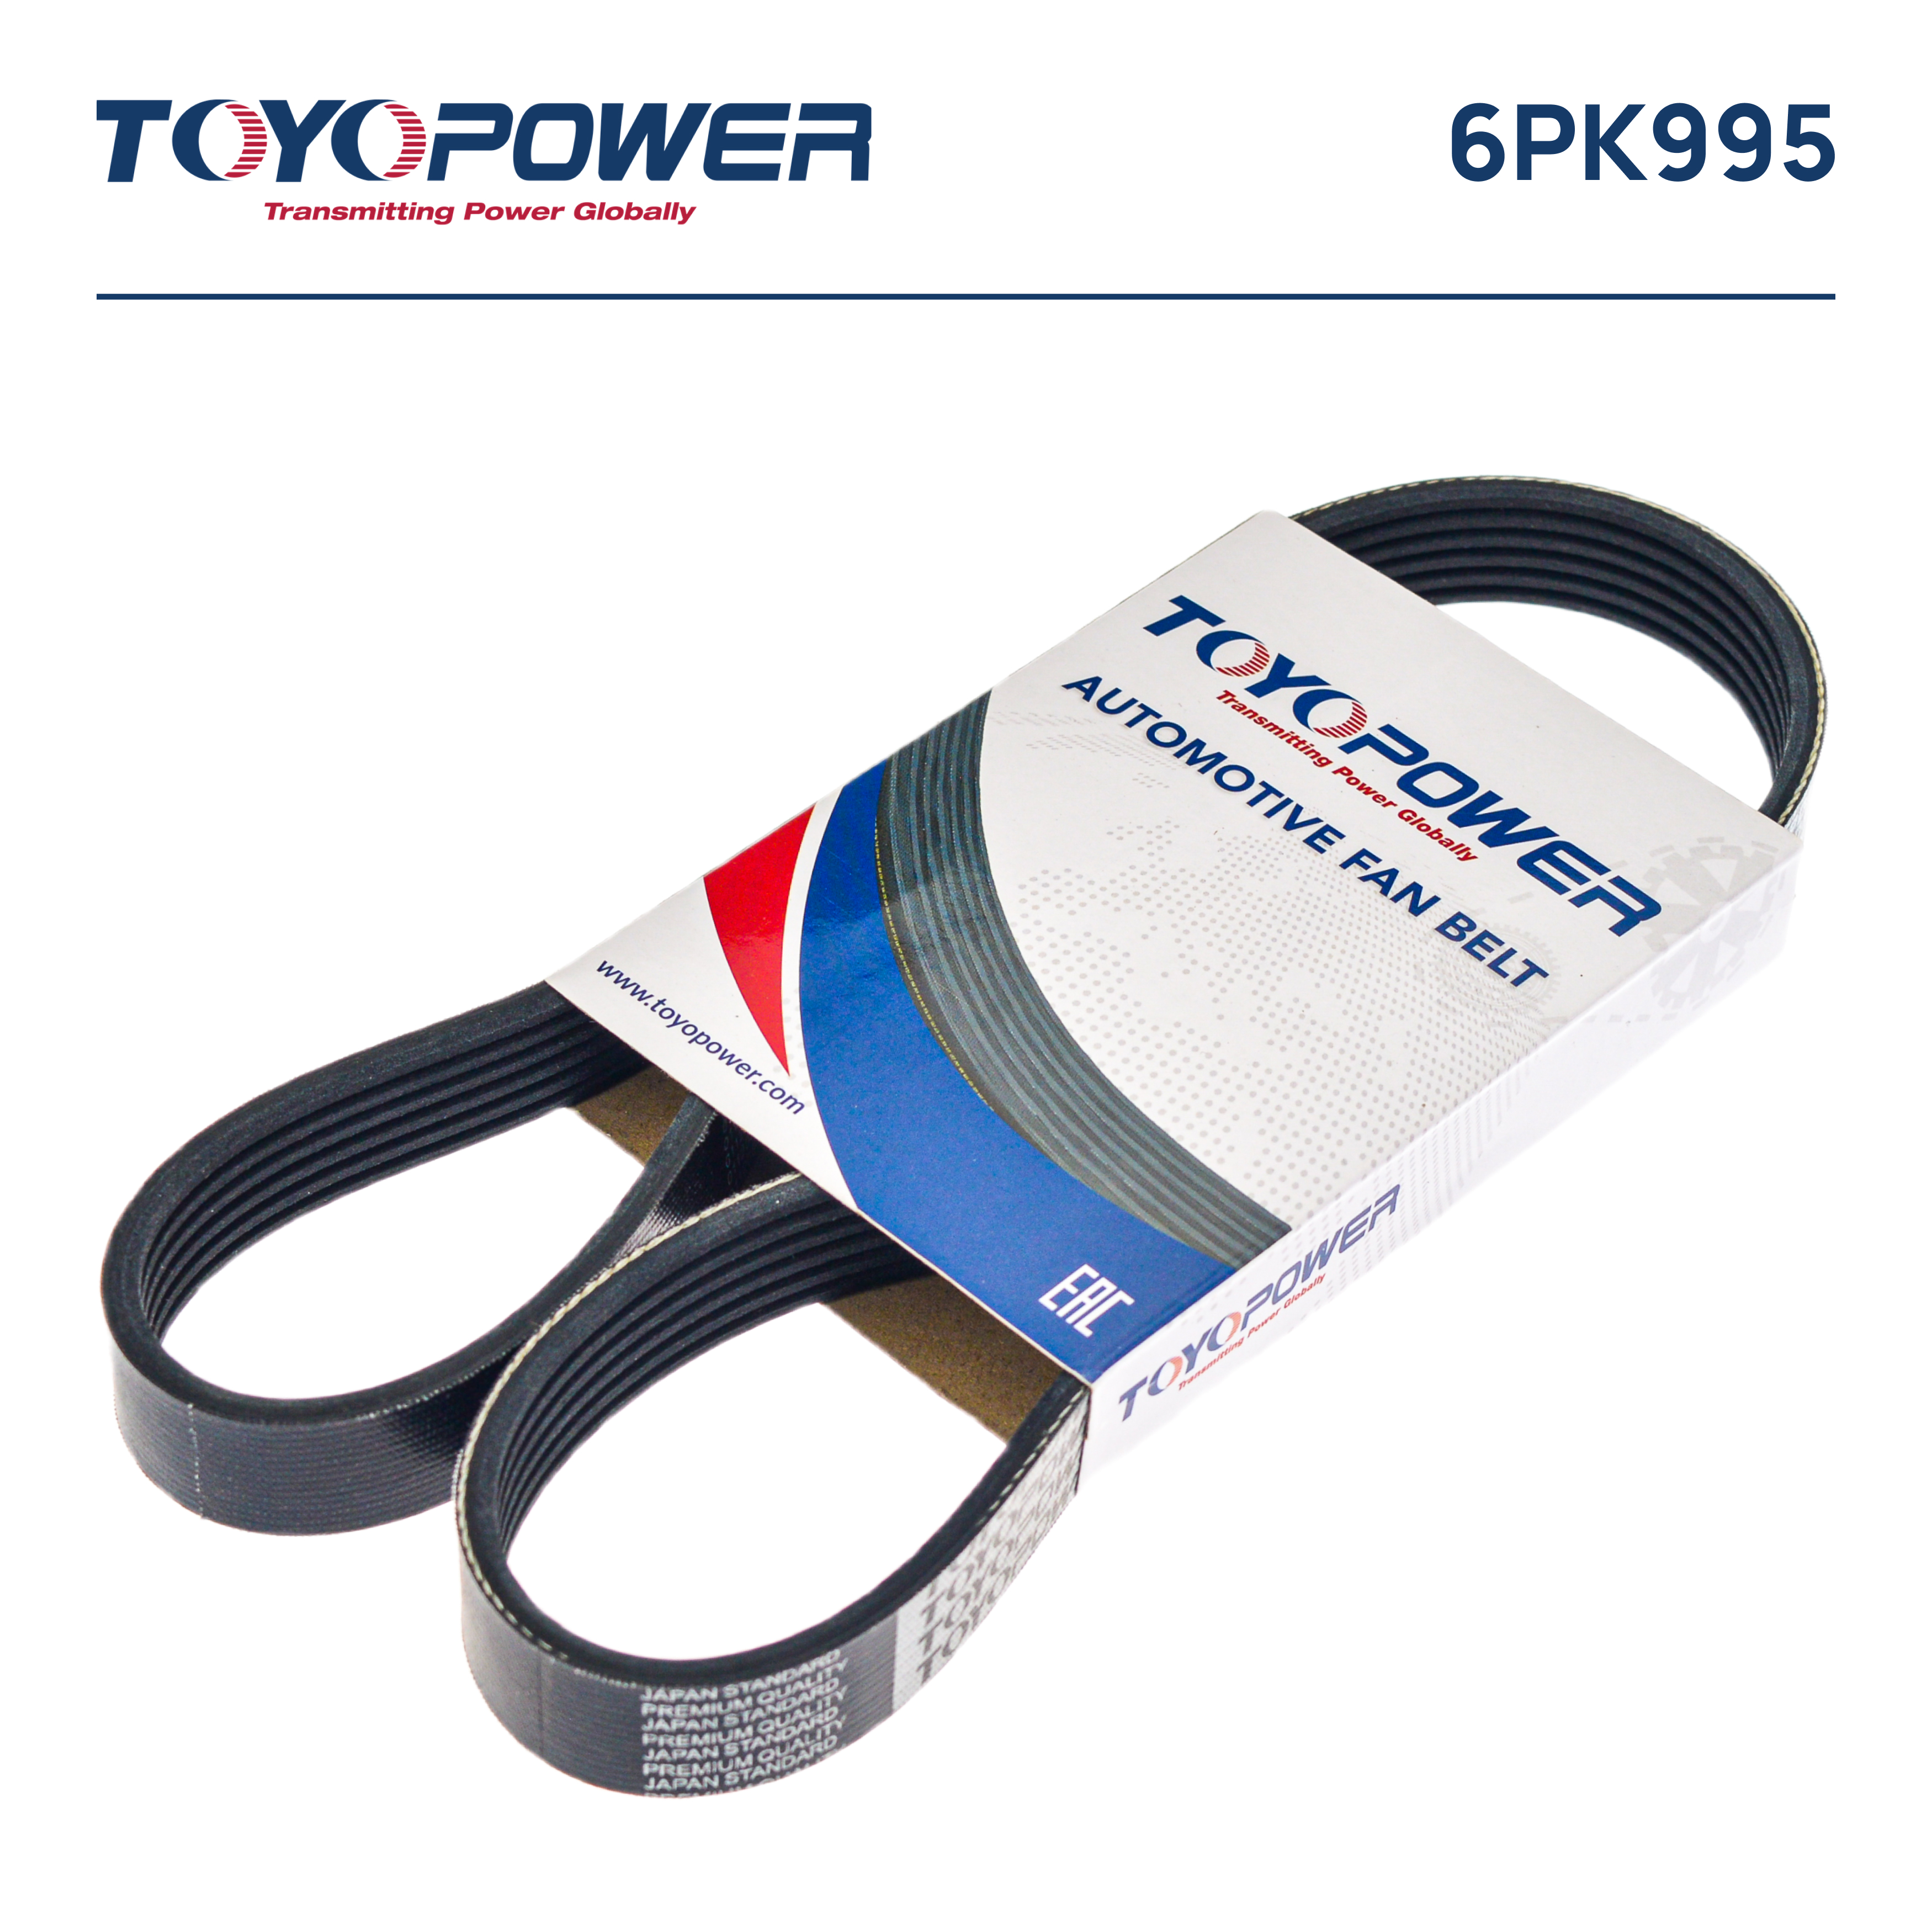 Ремень поликлиновый - Toyopower 6PK995